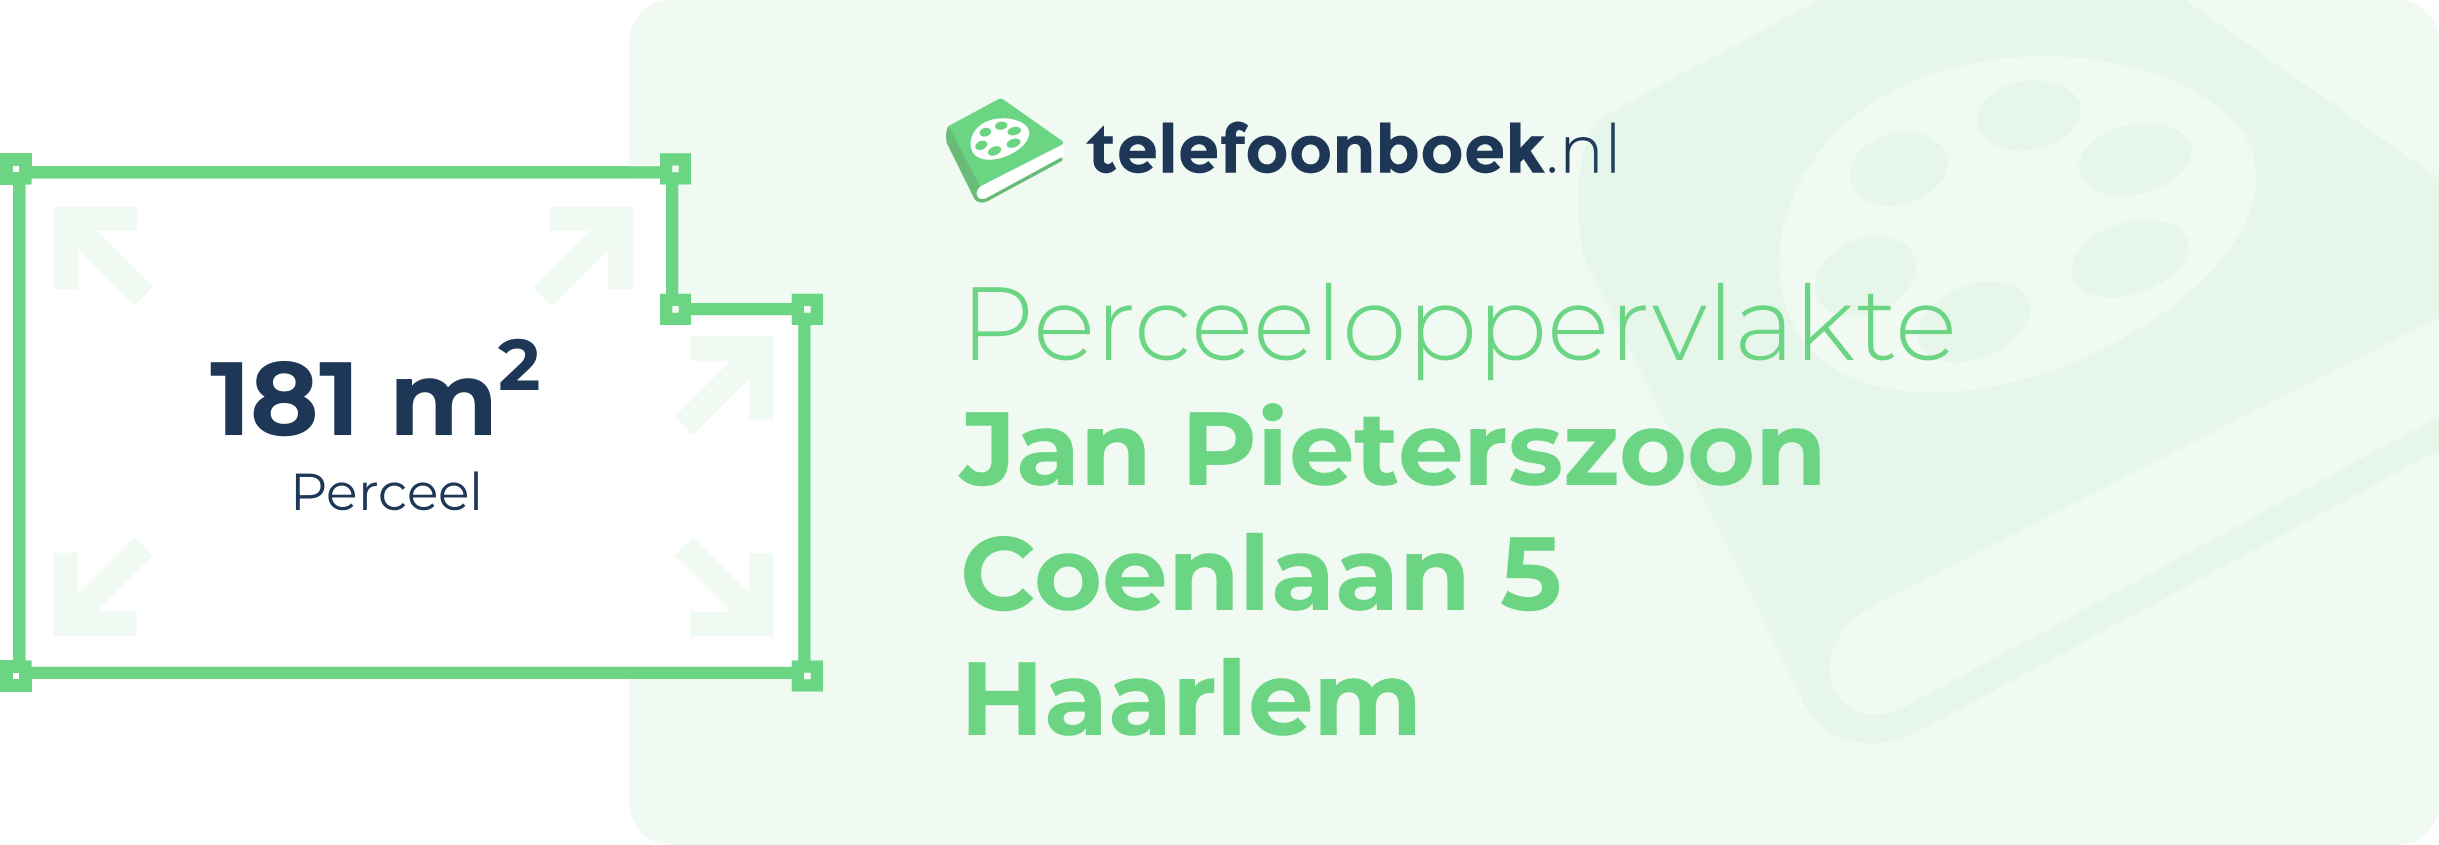 Perceeloppervlakte Jan Pieterszoon Coenlaan 5 Haarlem